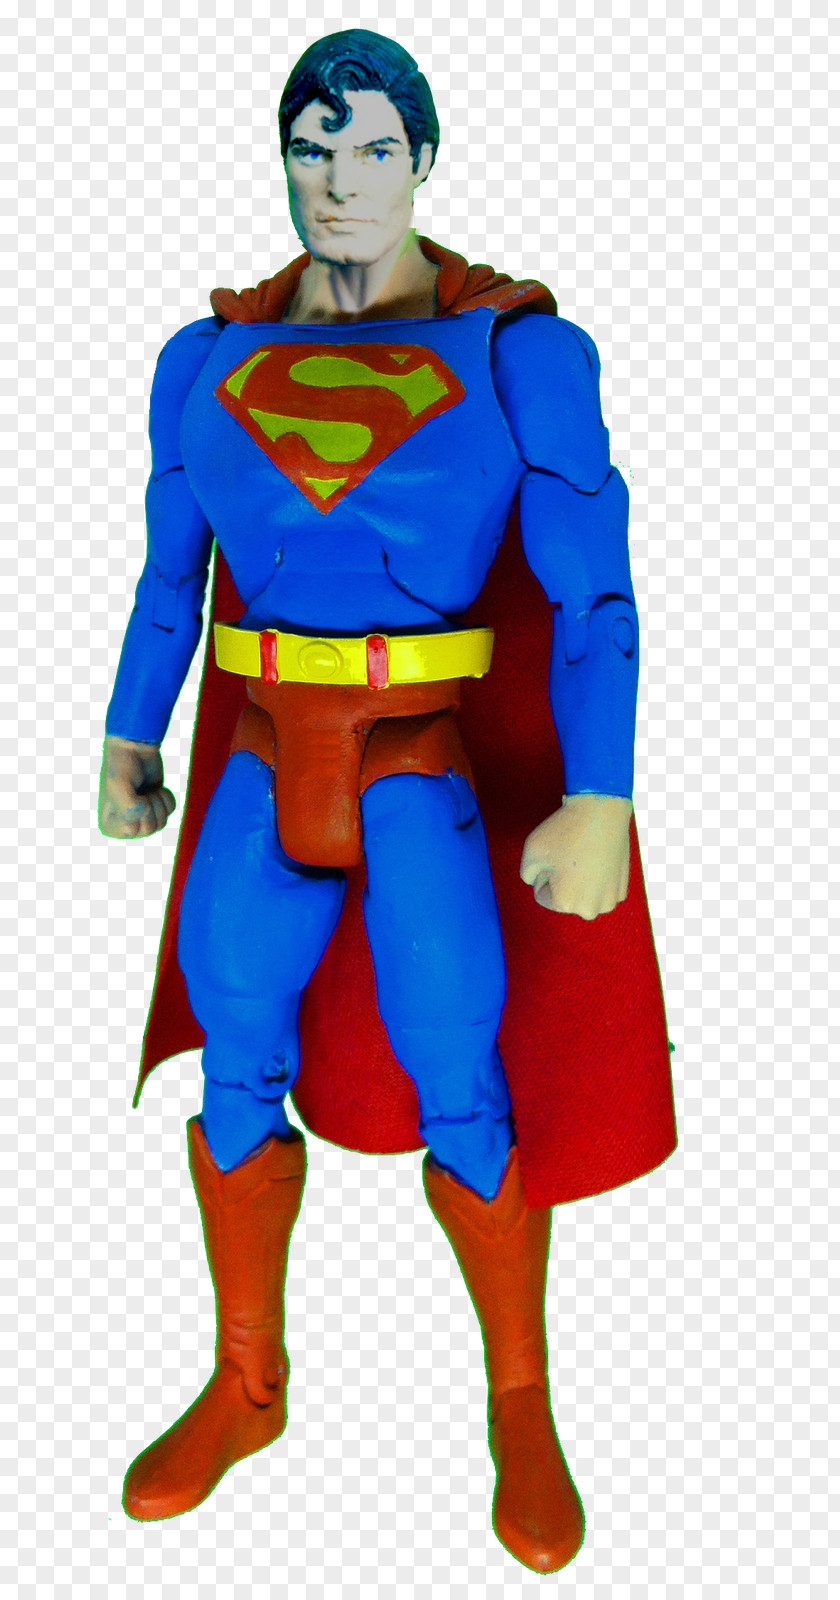 Little Superman Batman General Zod Action & Toy Figures Superhero PNG